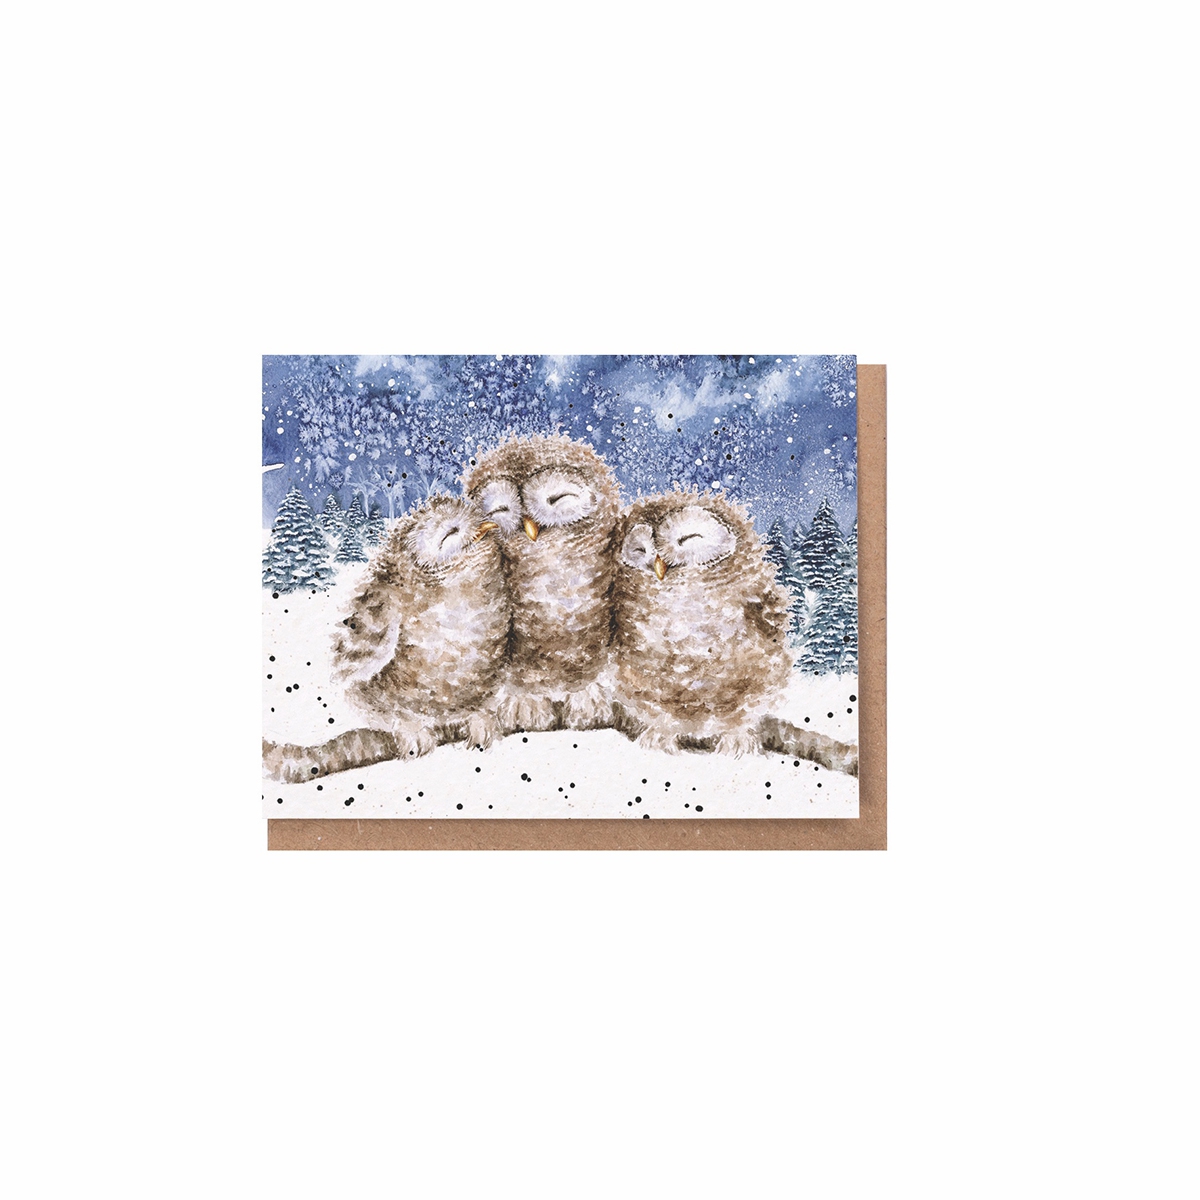 3 Eulen Weihnachtskarte "Three Wise Men" 91 x 72mm Wrendale Designs